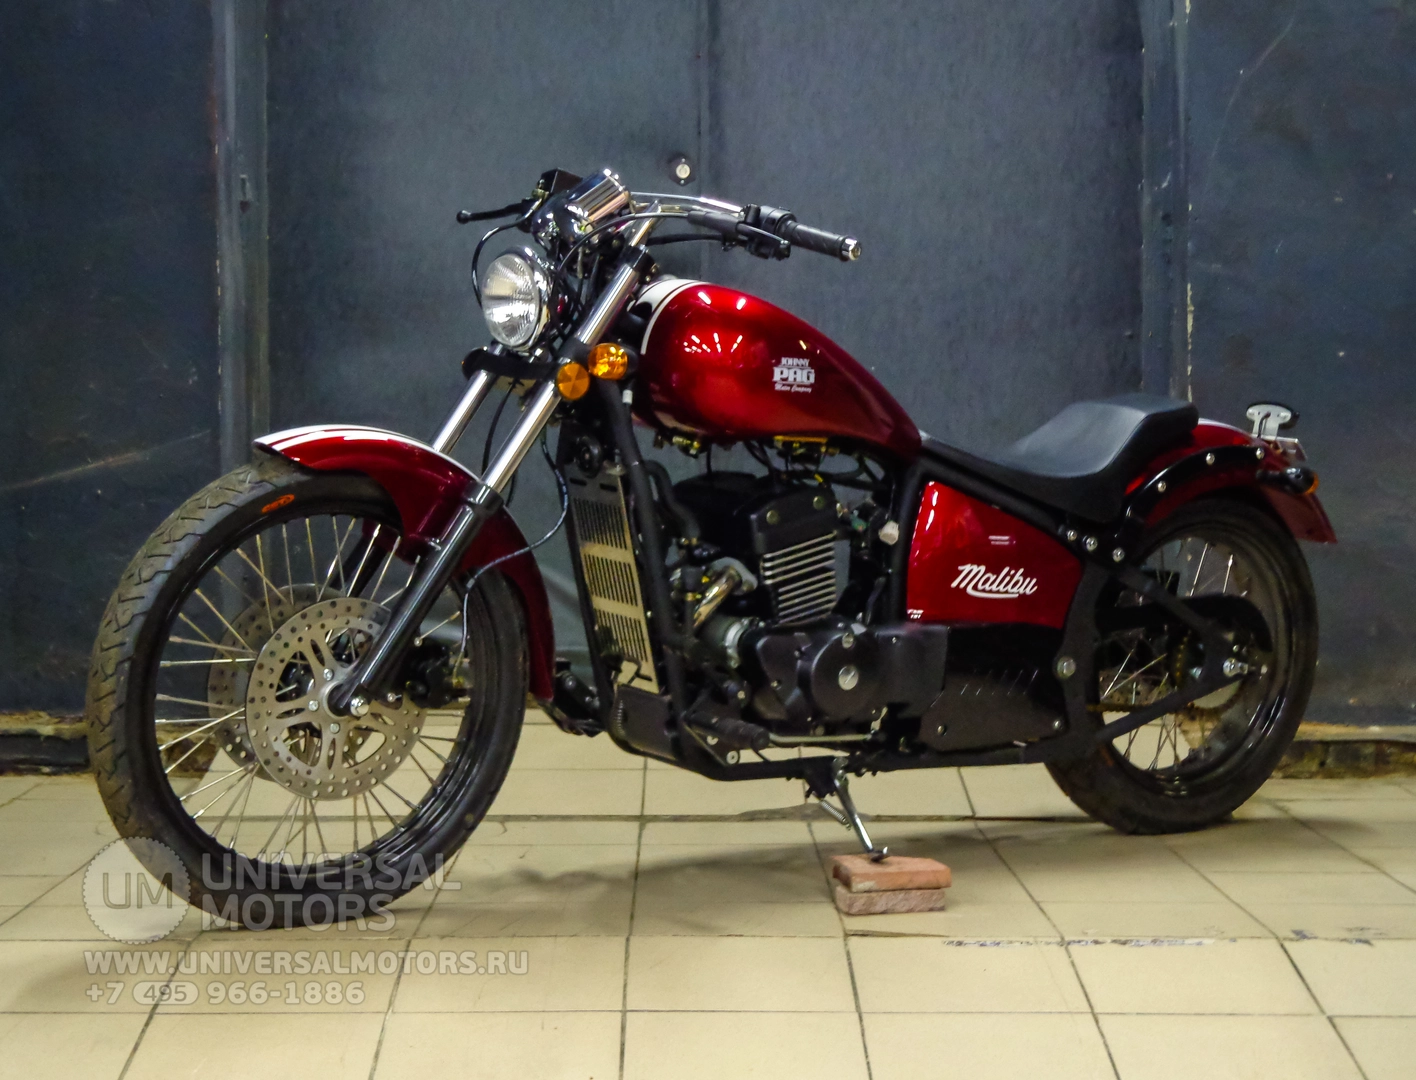 Мотоцикл Johnny Pag Malibu 320i, 1541092335902952200